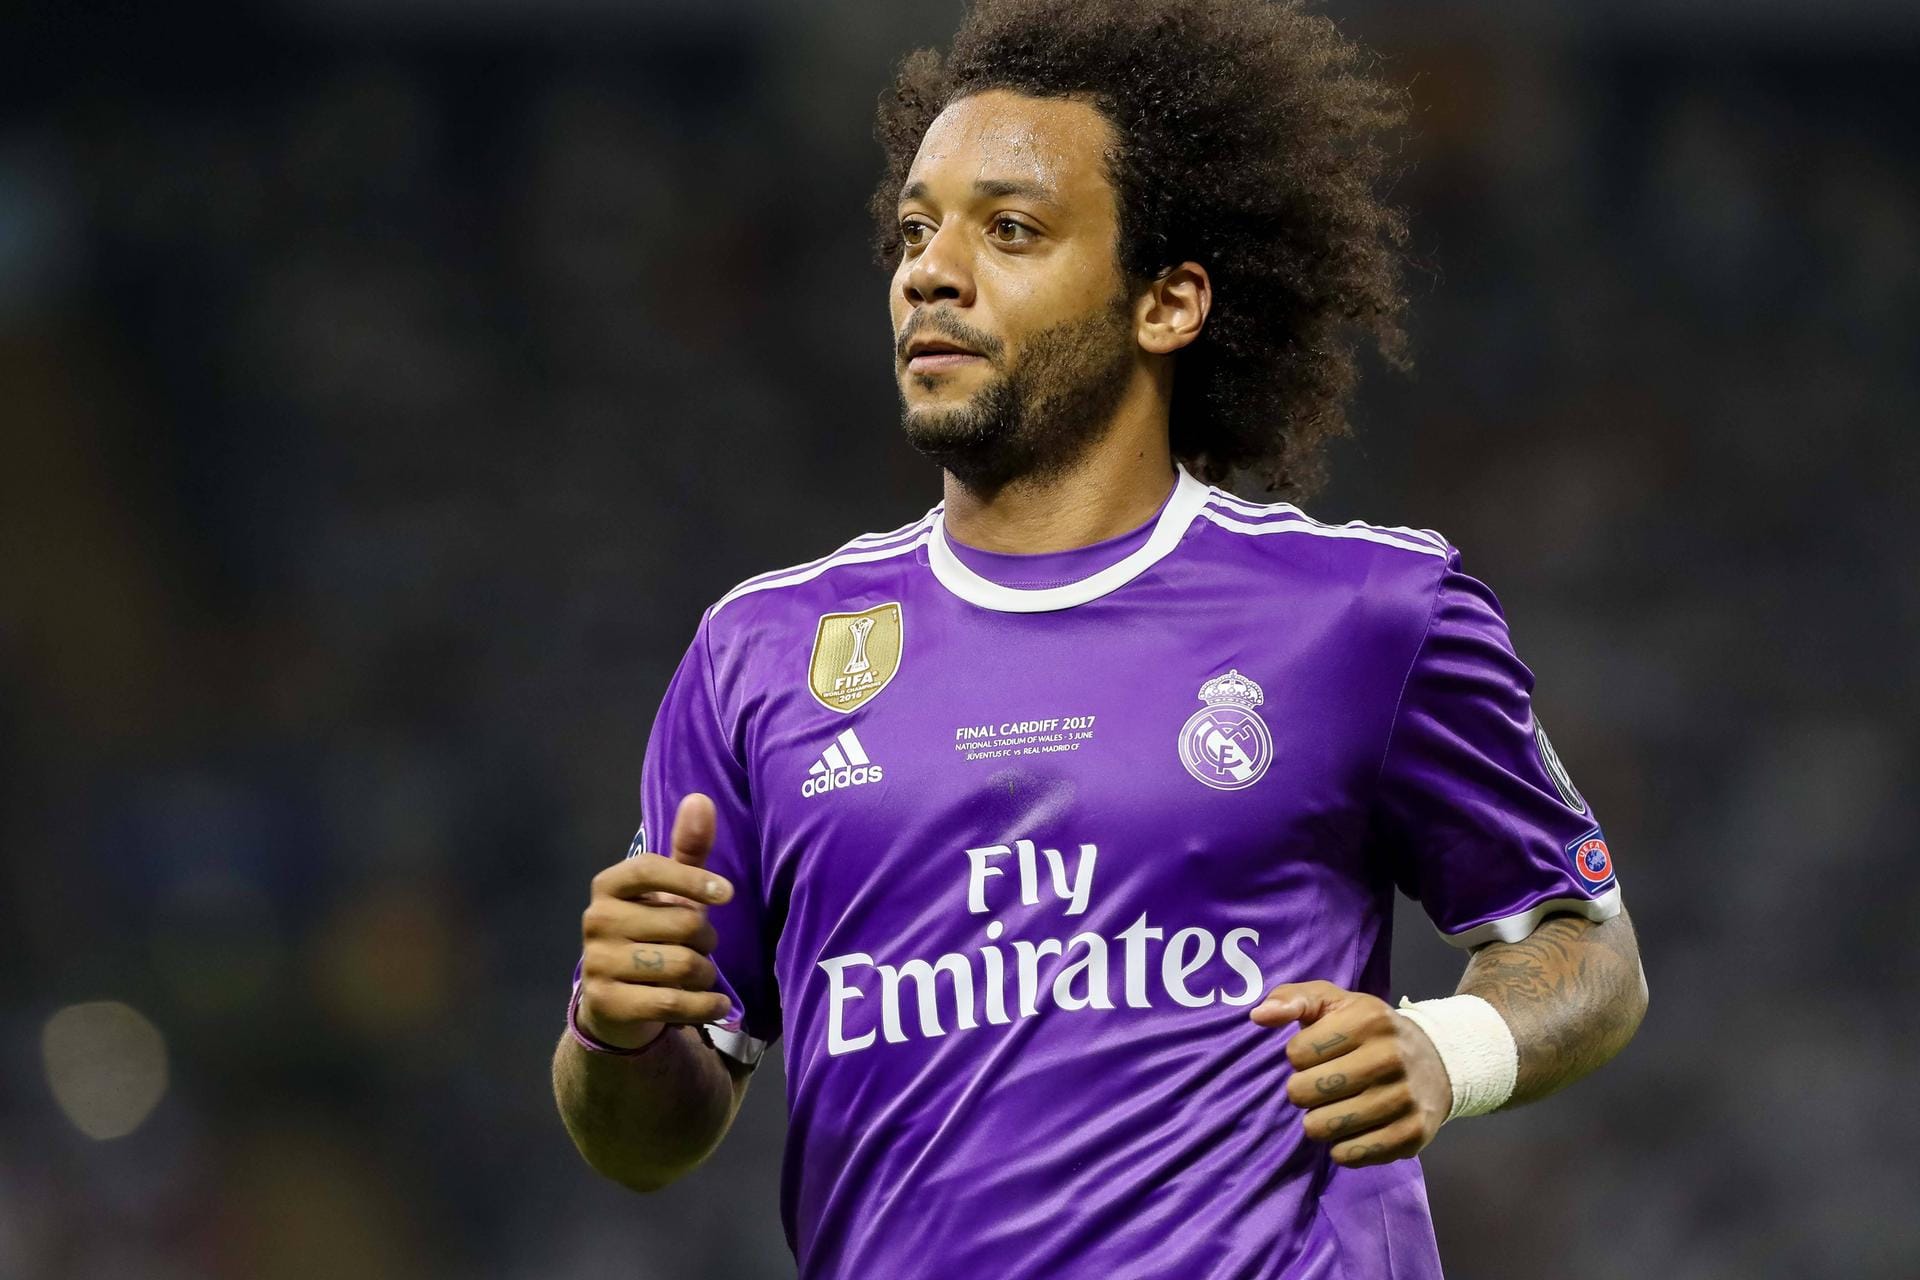 Der beste Linksverteidiger der Champions-League-Saison: Marcelo von Real Madrid. Wer sonst?